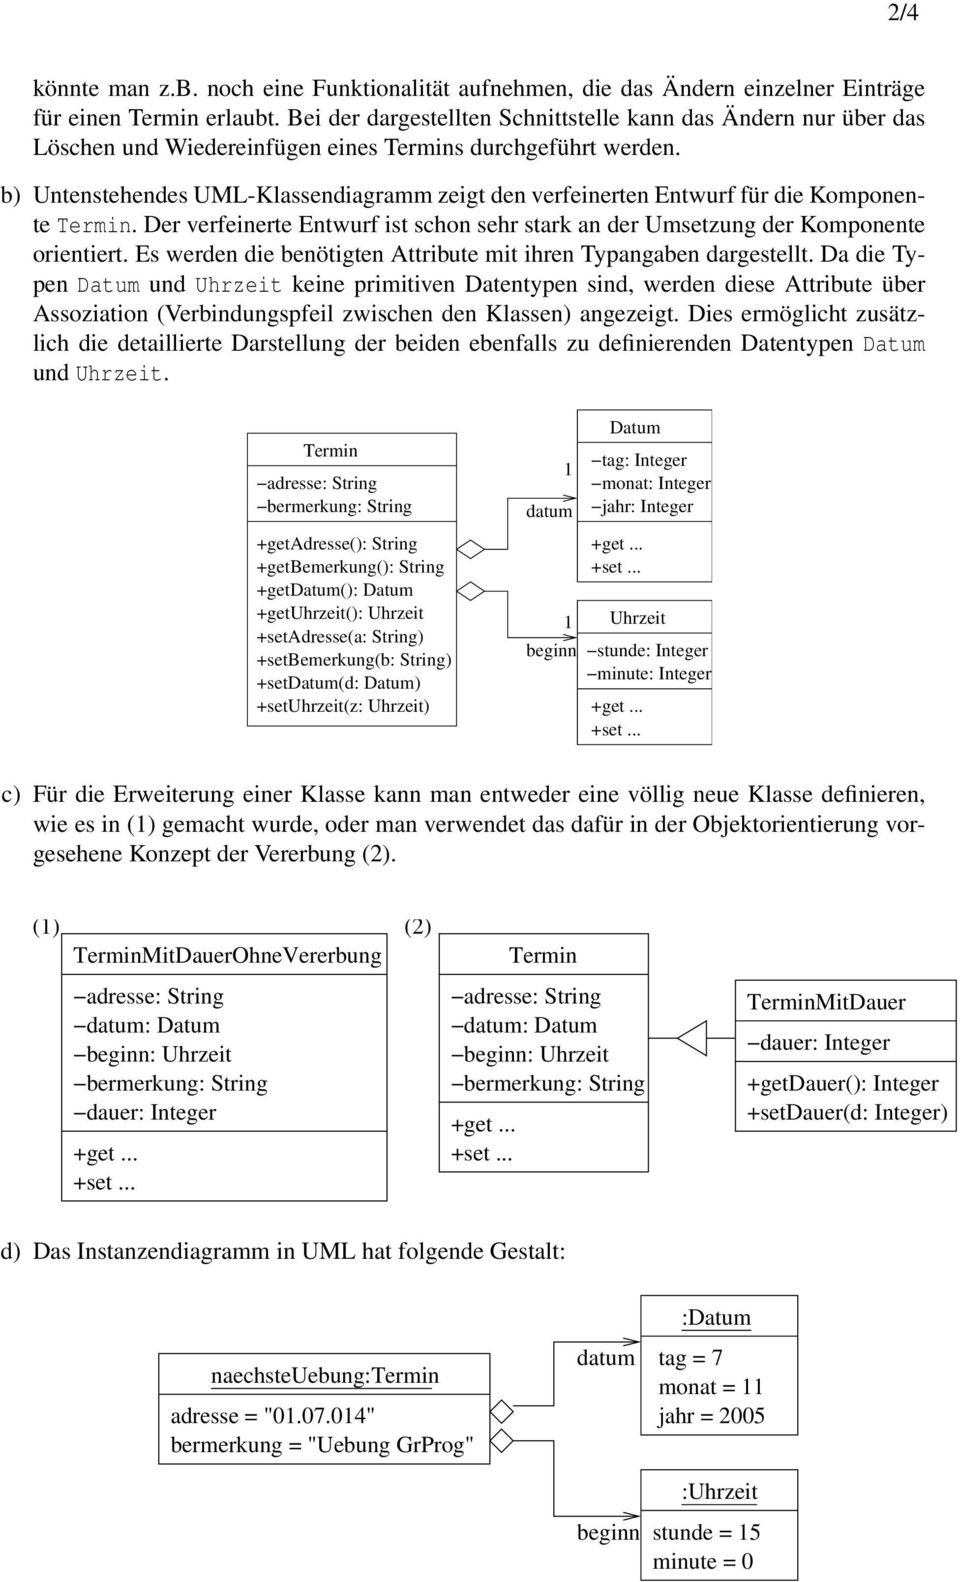 b) Untenstehendes UML-Klassendiagramm zeigt den verfeinerten Entwurf für die Komponente Termin. Der verfeinerte Entwurf ist schon sehr stark an der Umsetzung der Komponente orientiert.